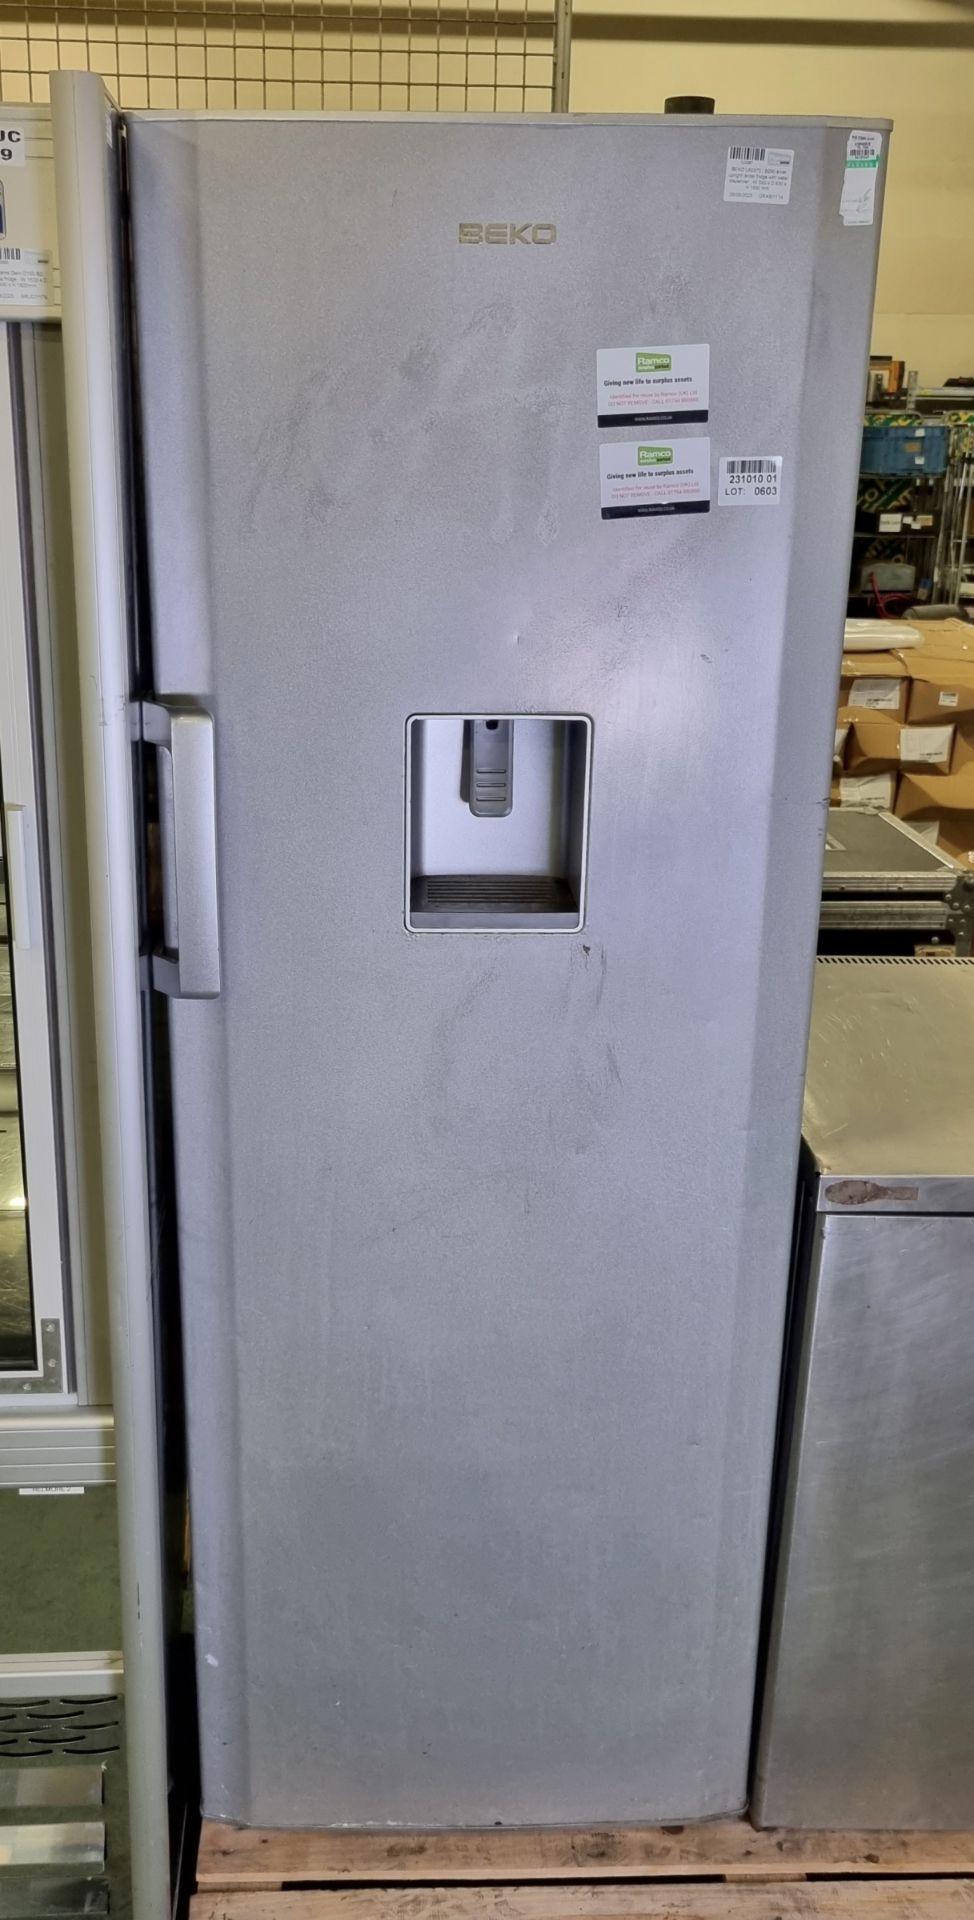 BEKO L60370 / B290 silver upright larder fridge with water dispenser - W 590 x D 630 x H 1690 mm